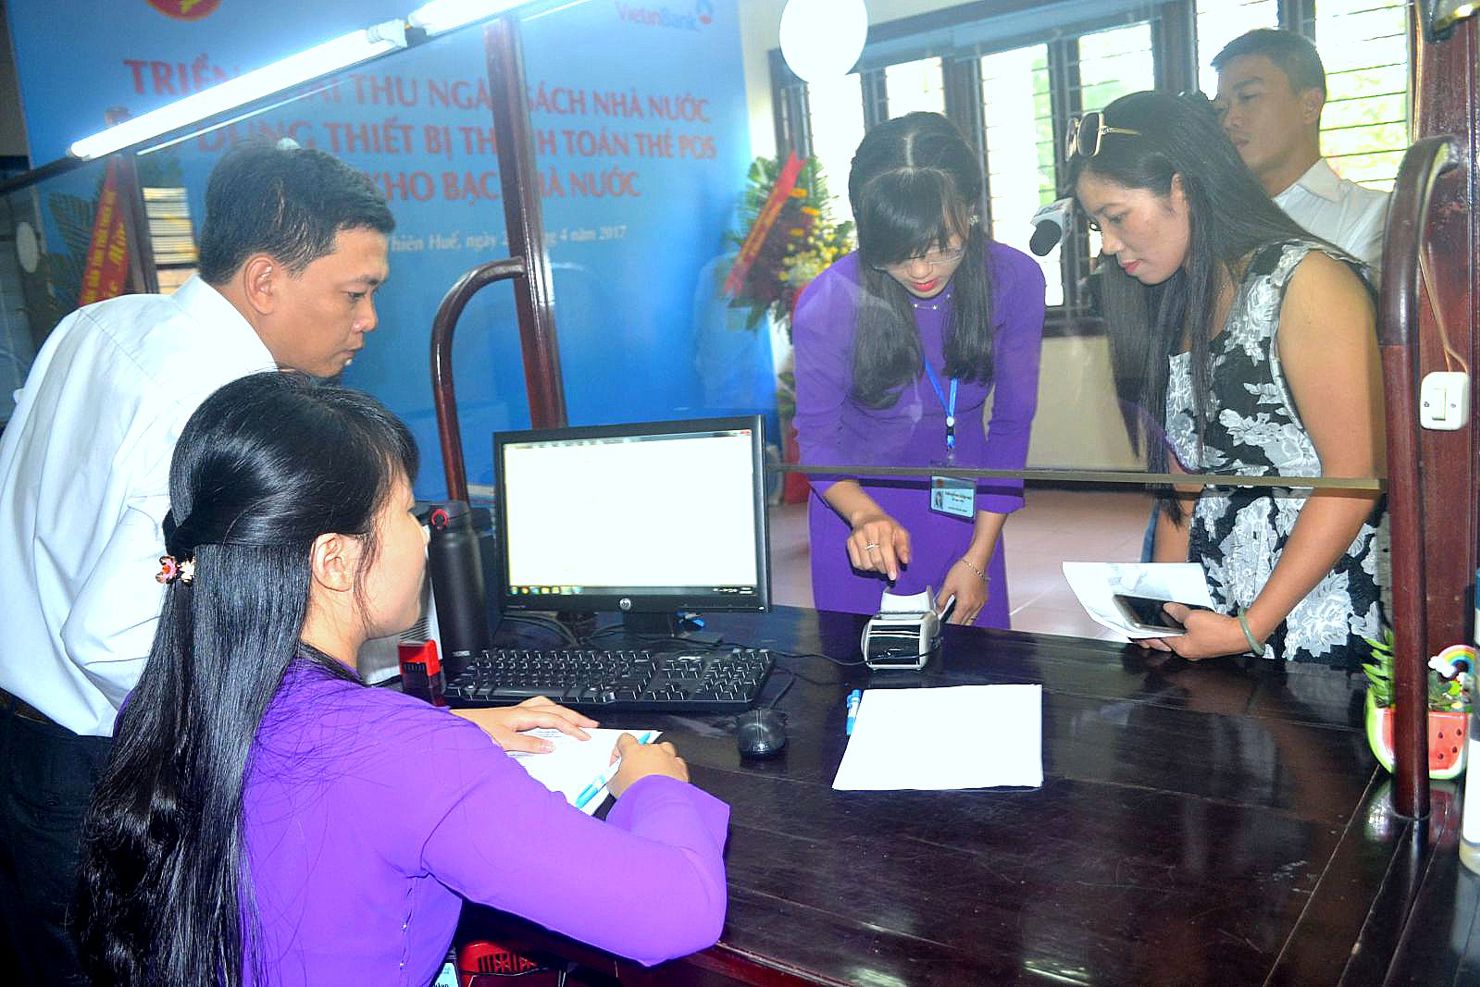 Trong quý I/2019, KBNN Thừa Thiên - Huế đã thực hiện tốt công tác kế toán NSNN và hoạt động nghiệp vụ tại từng đơn vị kho bạc theo đúng quy định.